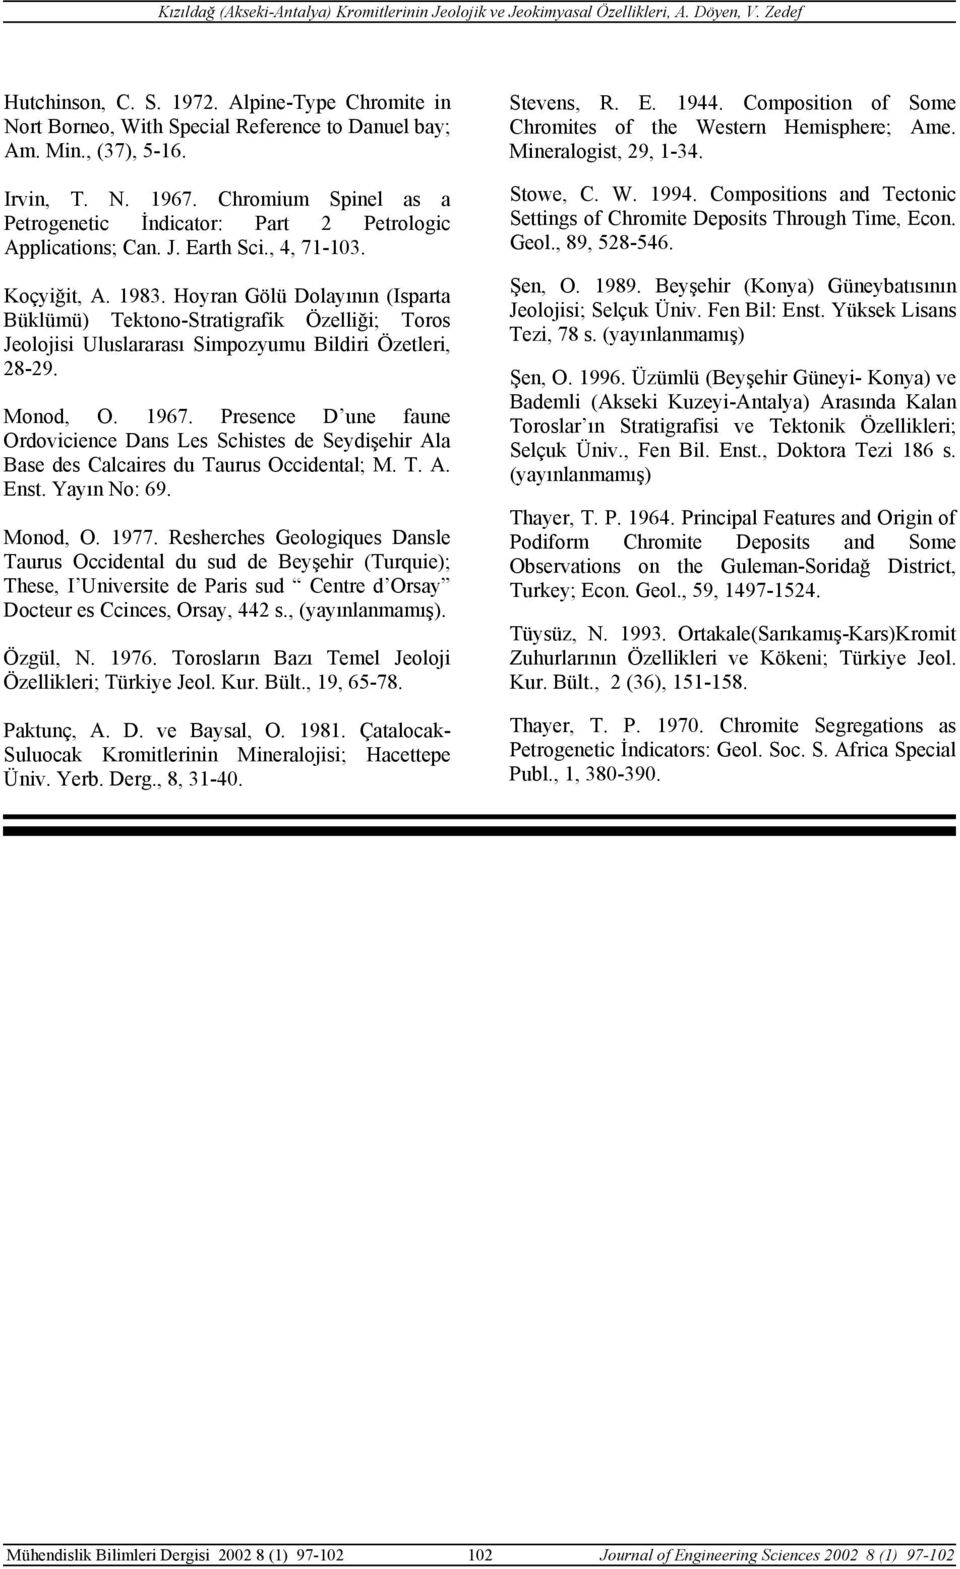 Hoyran Gölü Dolayının (Isparta Büklümü) Tektono-Stratigrafik Özelliği; Toros Jeolojisi Uluslararası Simpozyumu Bildiri Özetleri, 28-29. Monod, O. 1967.